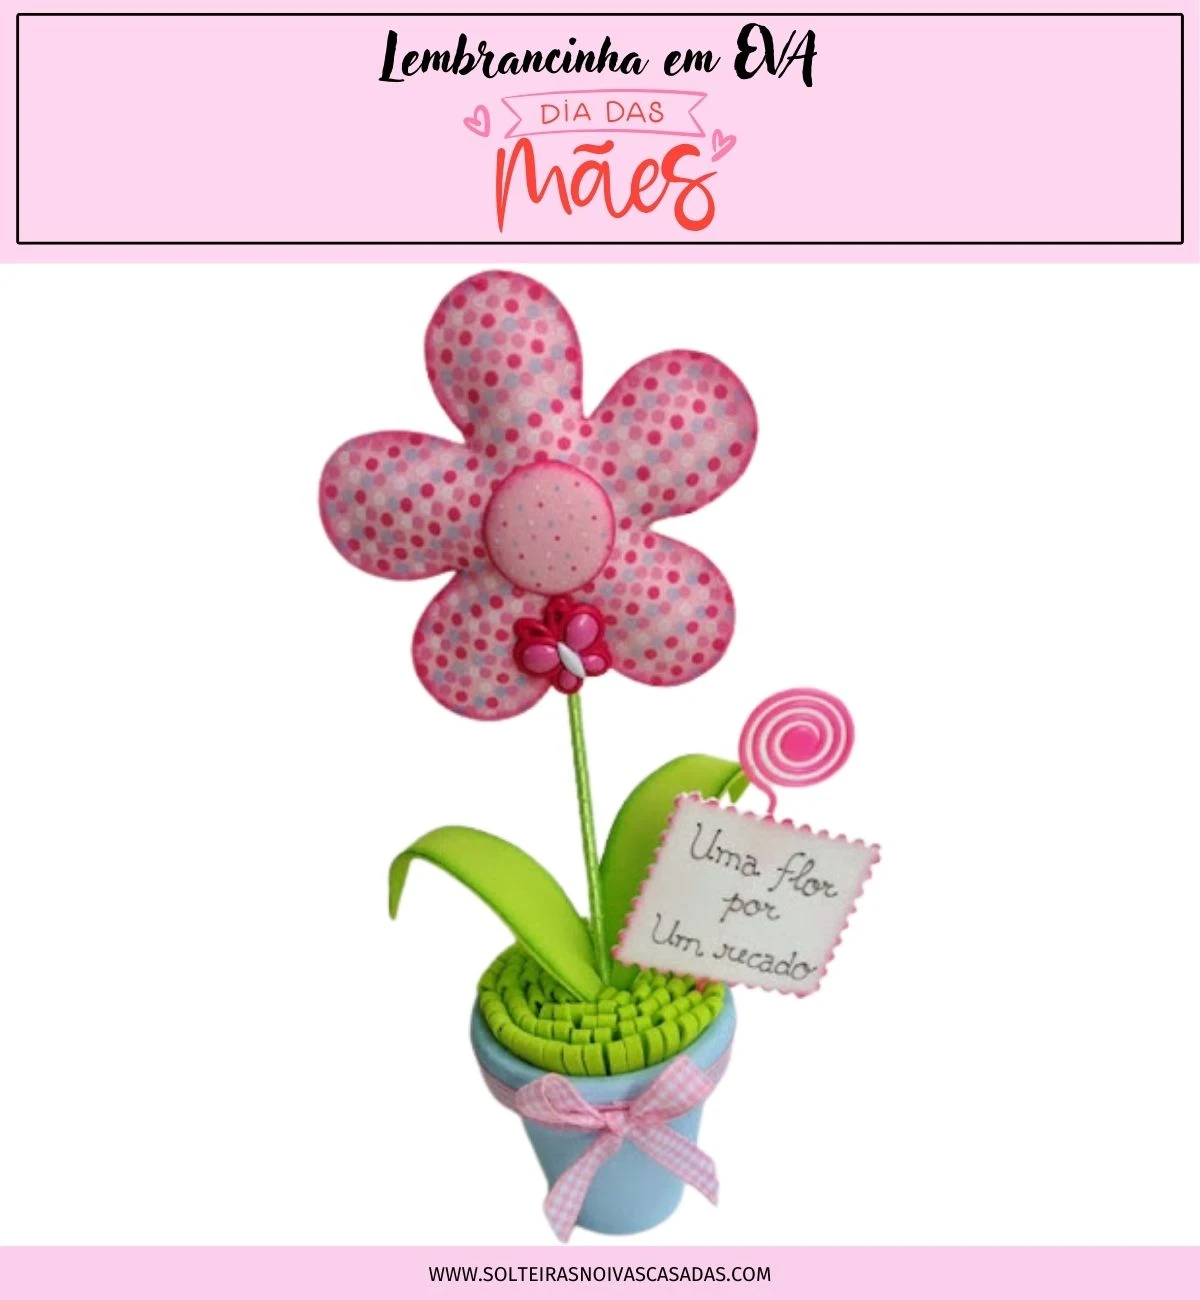 Lembrancinha em EVA para o Dia das Mães